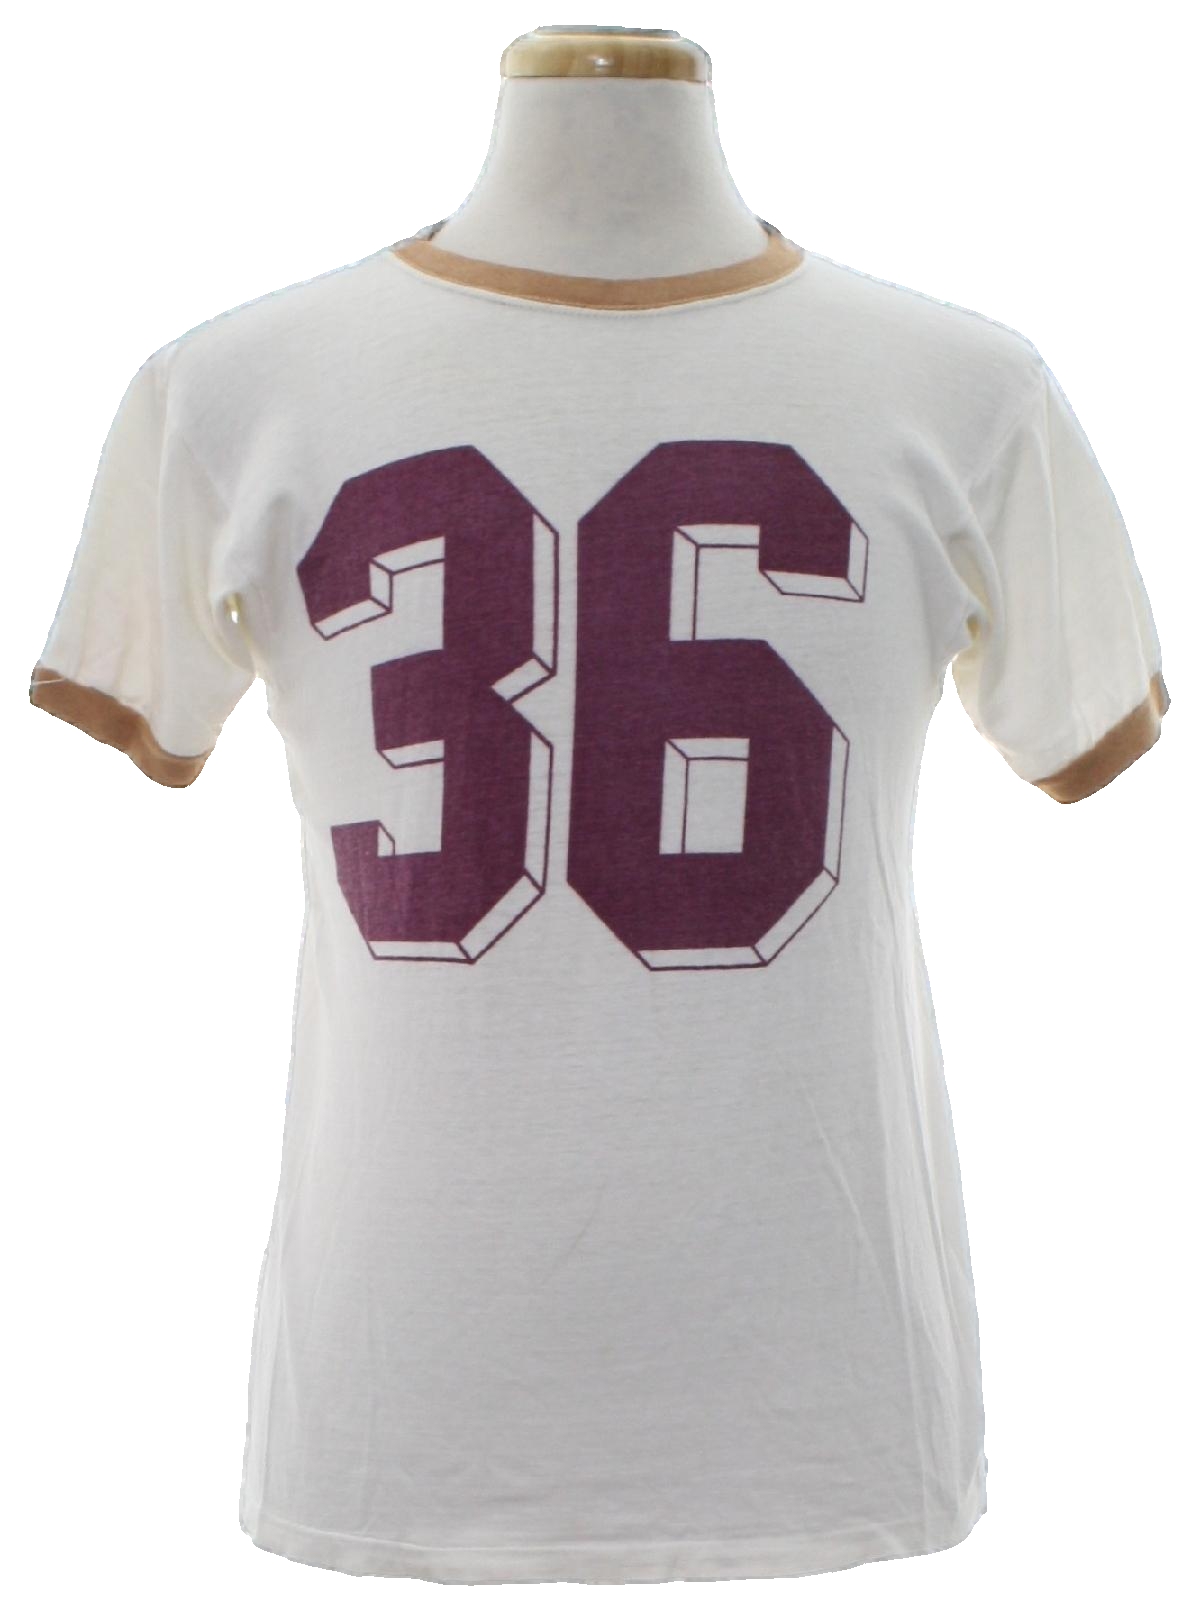 Vintage Sportswear 70's T Shirt: 70s -Sportswear- Unisex white